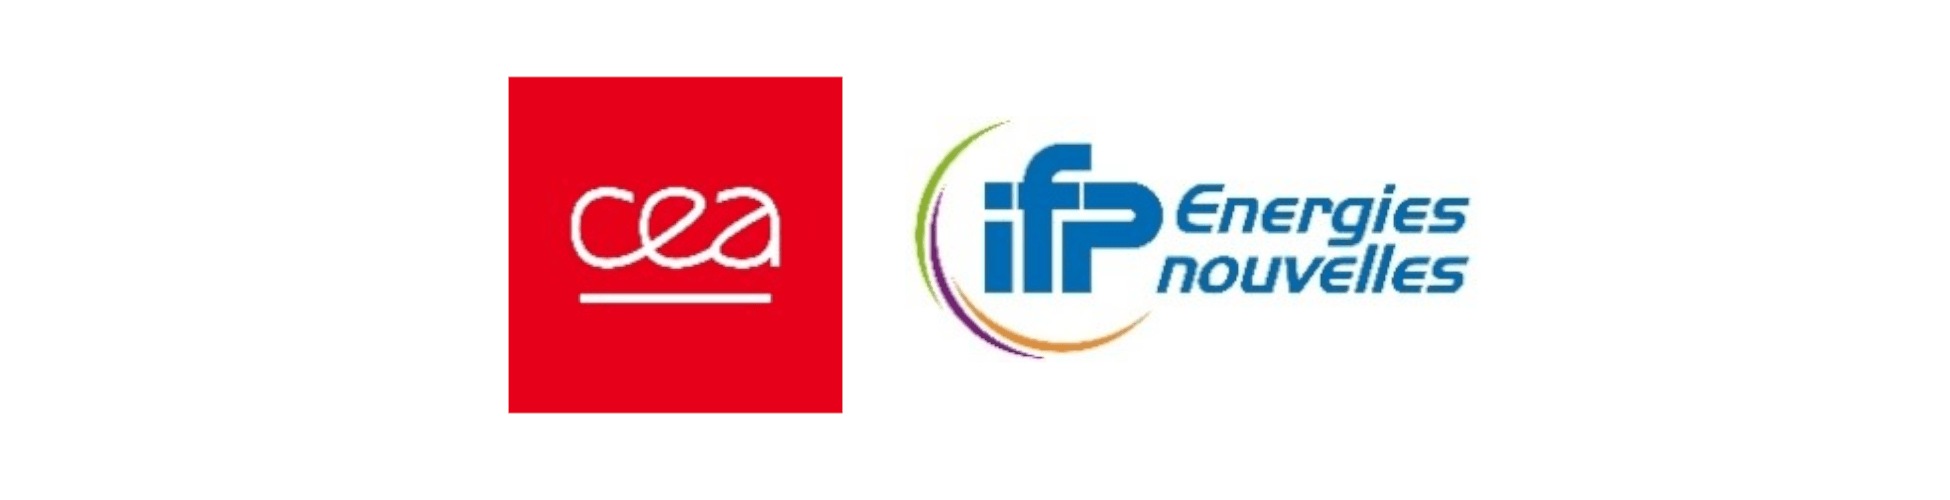 Logos du CEA et d'IFPEN